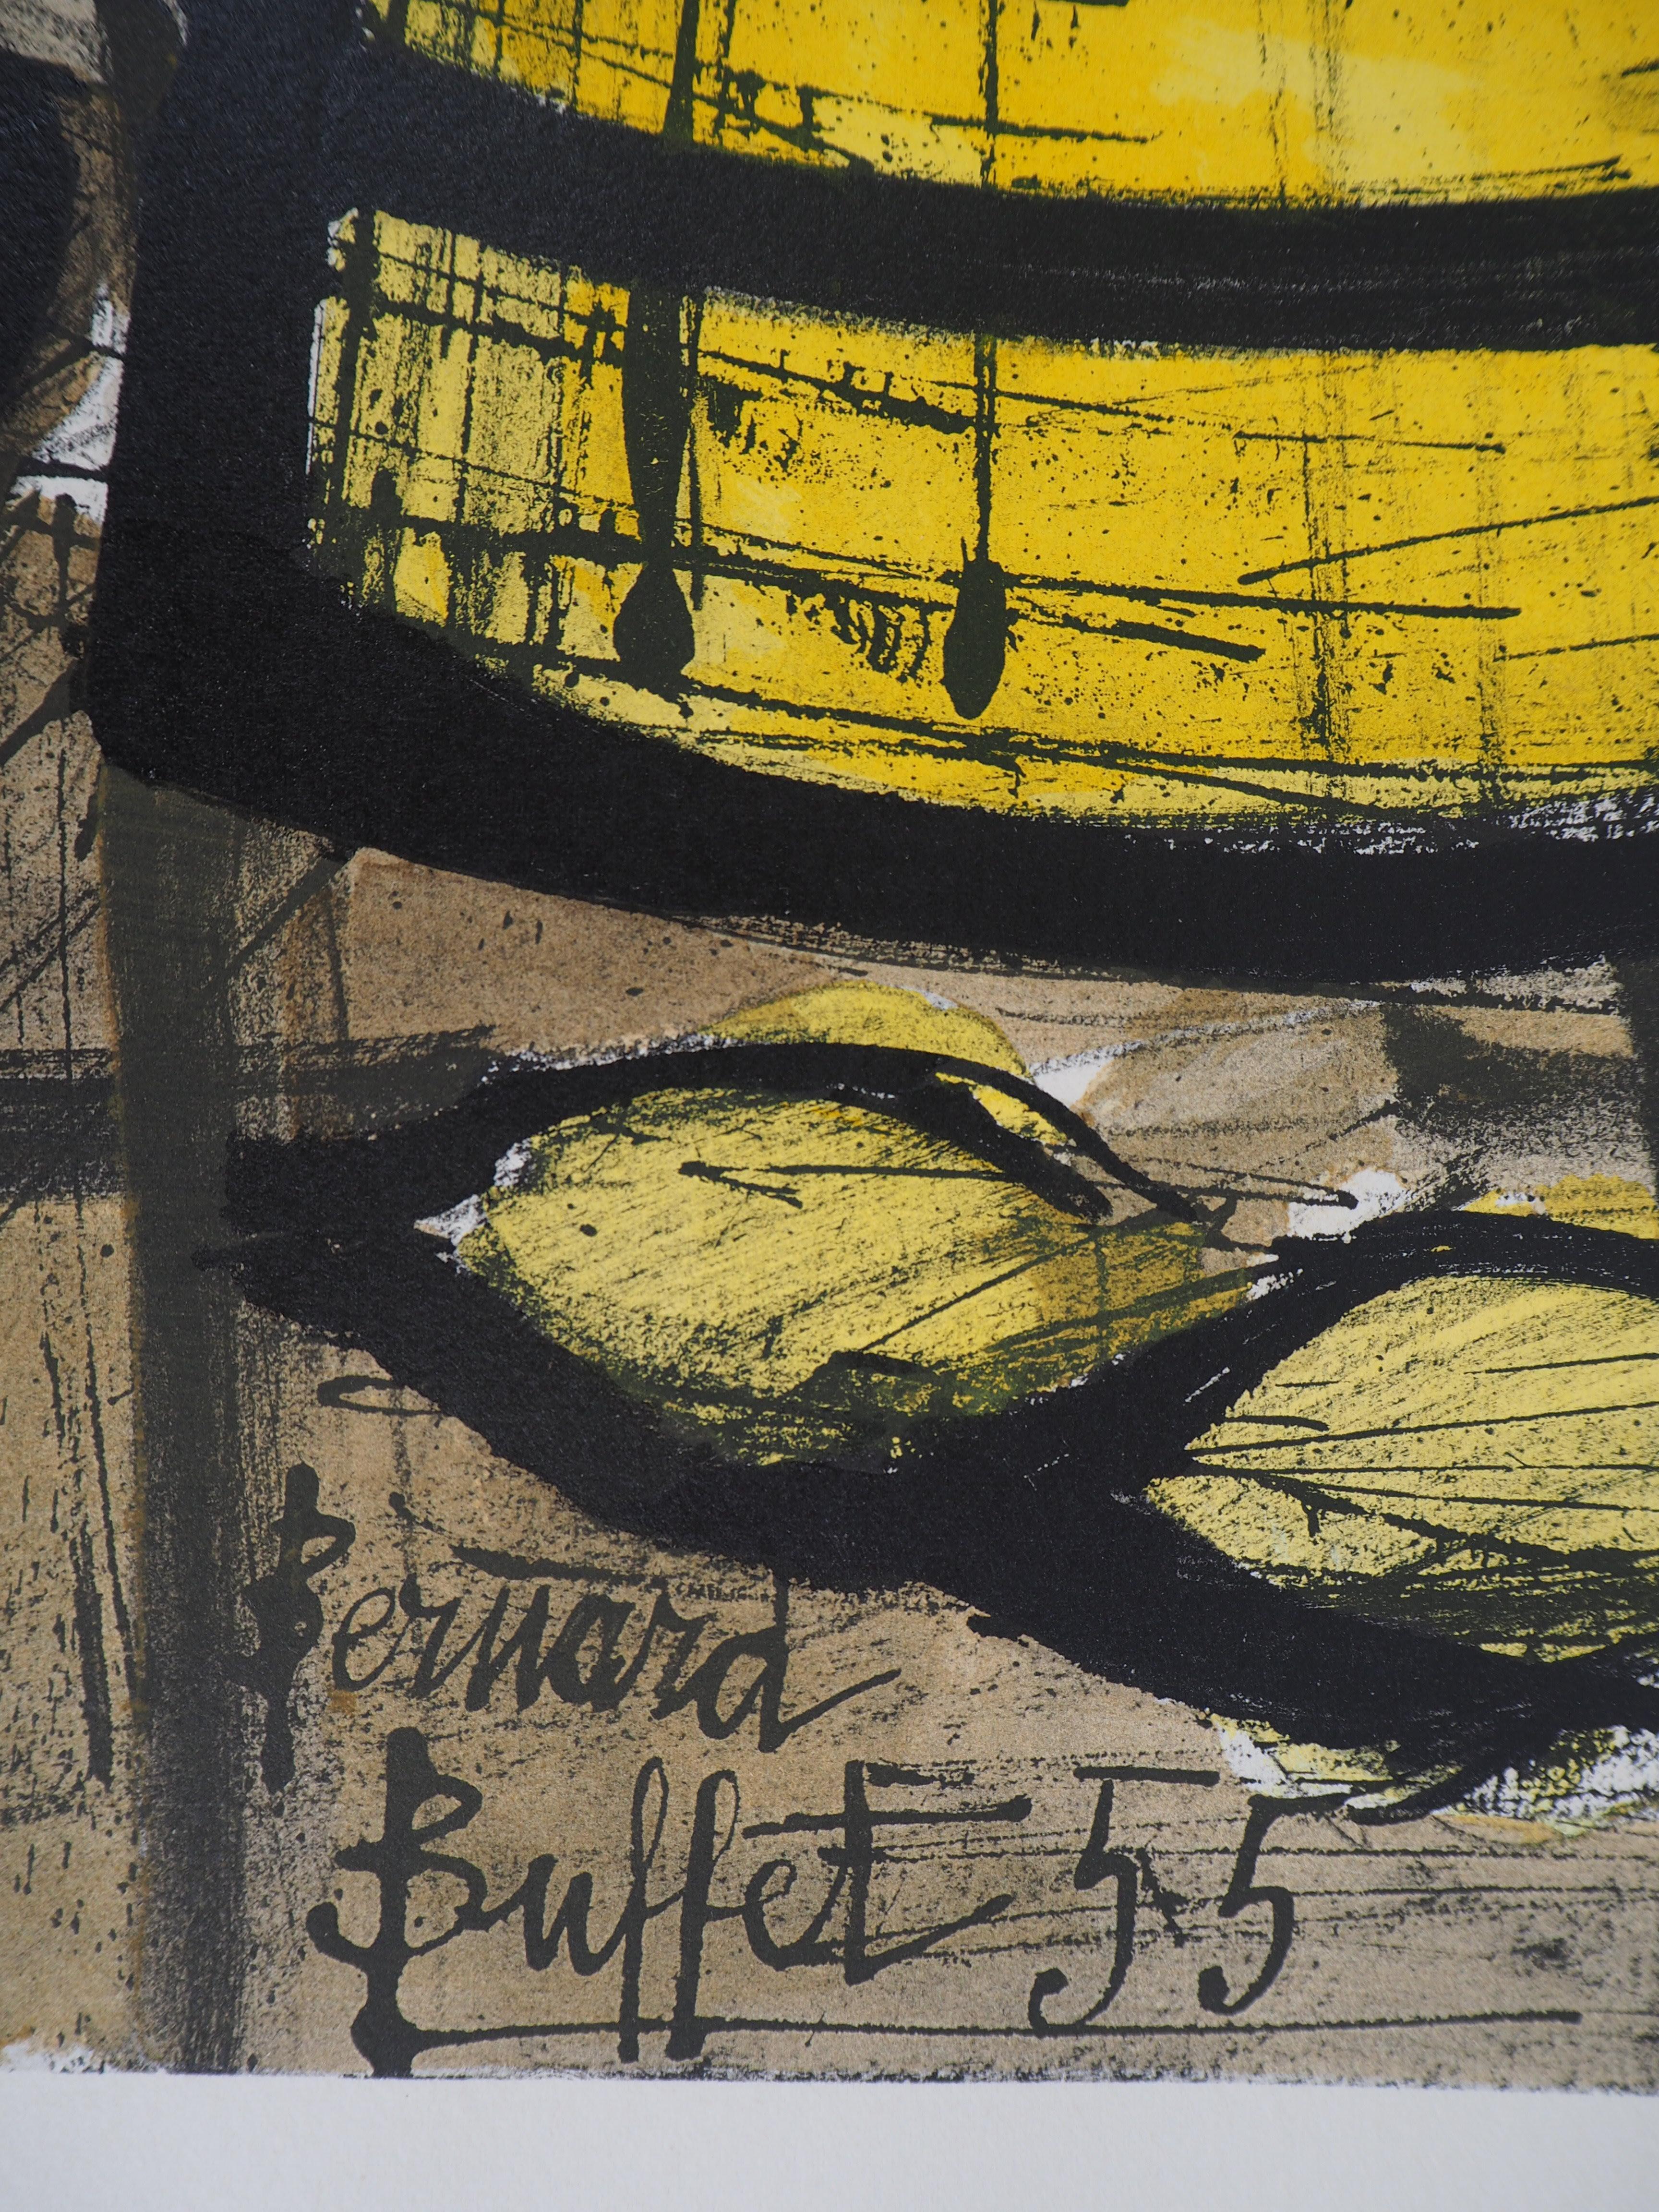 Bernard Buffet
Die gelbe Kaffeekanne, 1960

Lithographie
Gedruckte Unterschrift auf der Platte
Auf Arches Vellum 69 x 56 cm (ca. 28 x 22 Zoll)

Ausgezeichneter Zustand